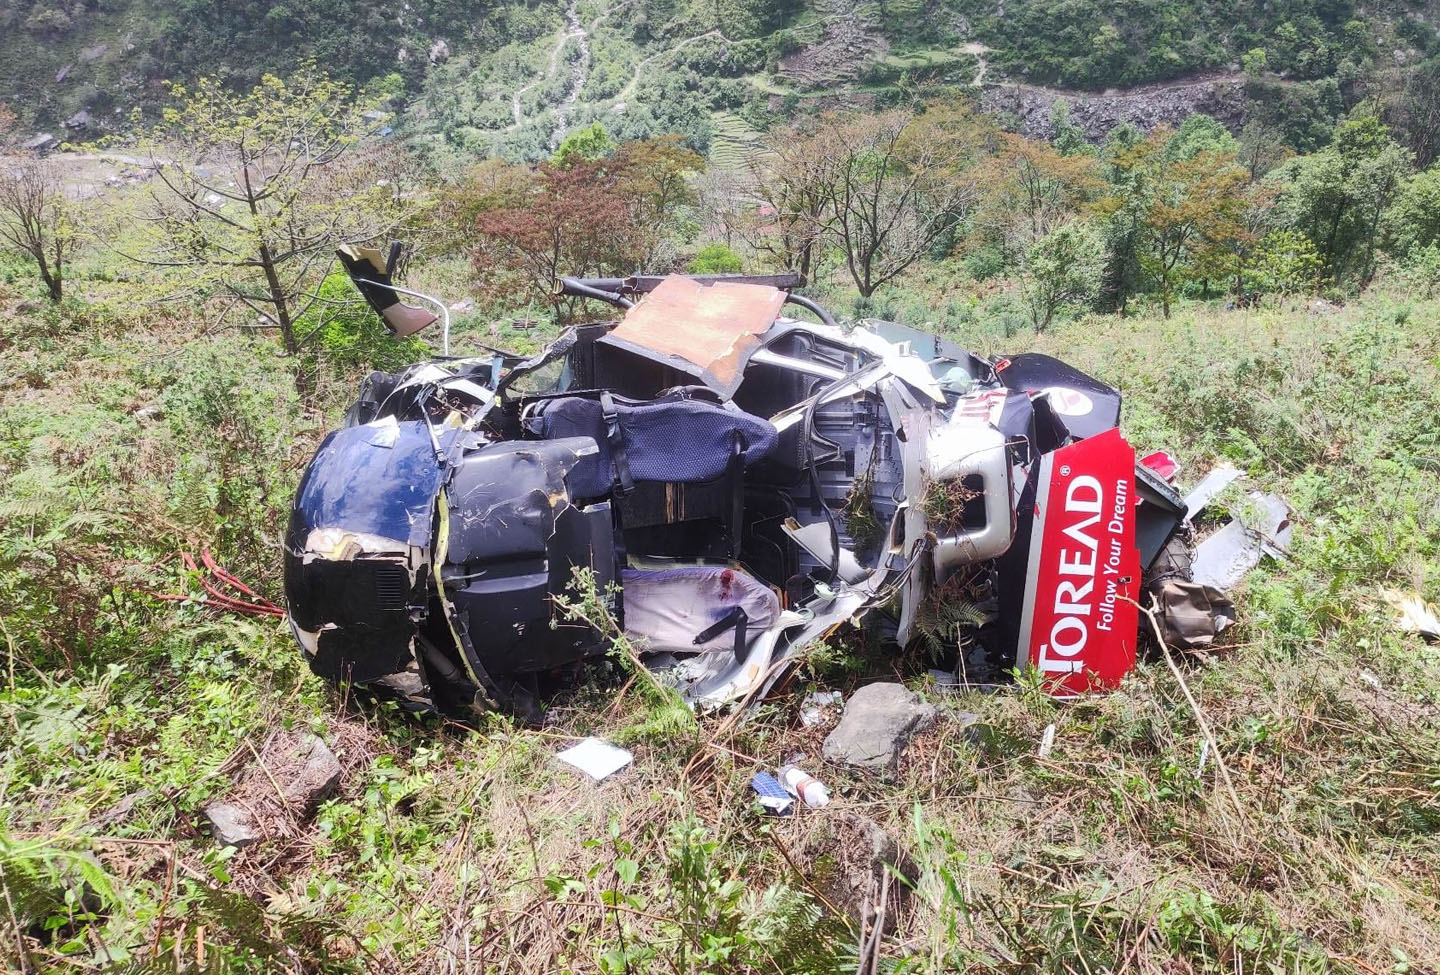 सिम्रिक एअरकाे हेलिकप्टर दुर्घटना: १ जनाको मृत्यु, घाइतेलाई उपचारका लागि काठमाडौं ल्याइयो